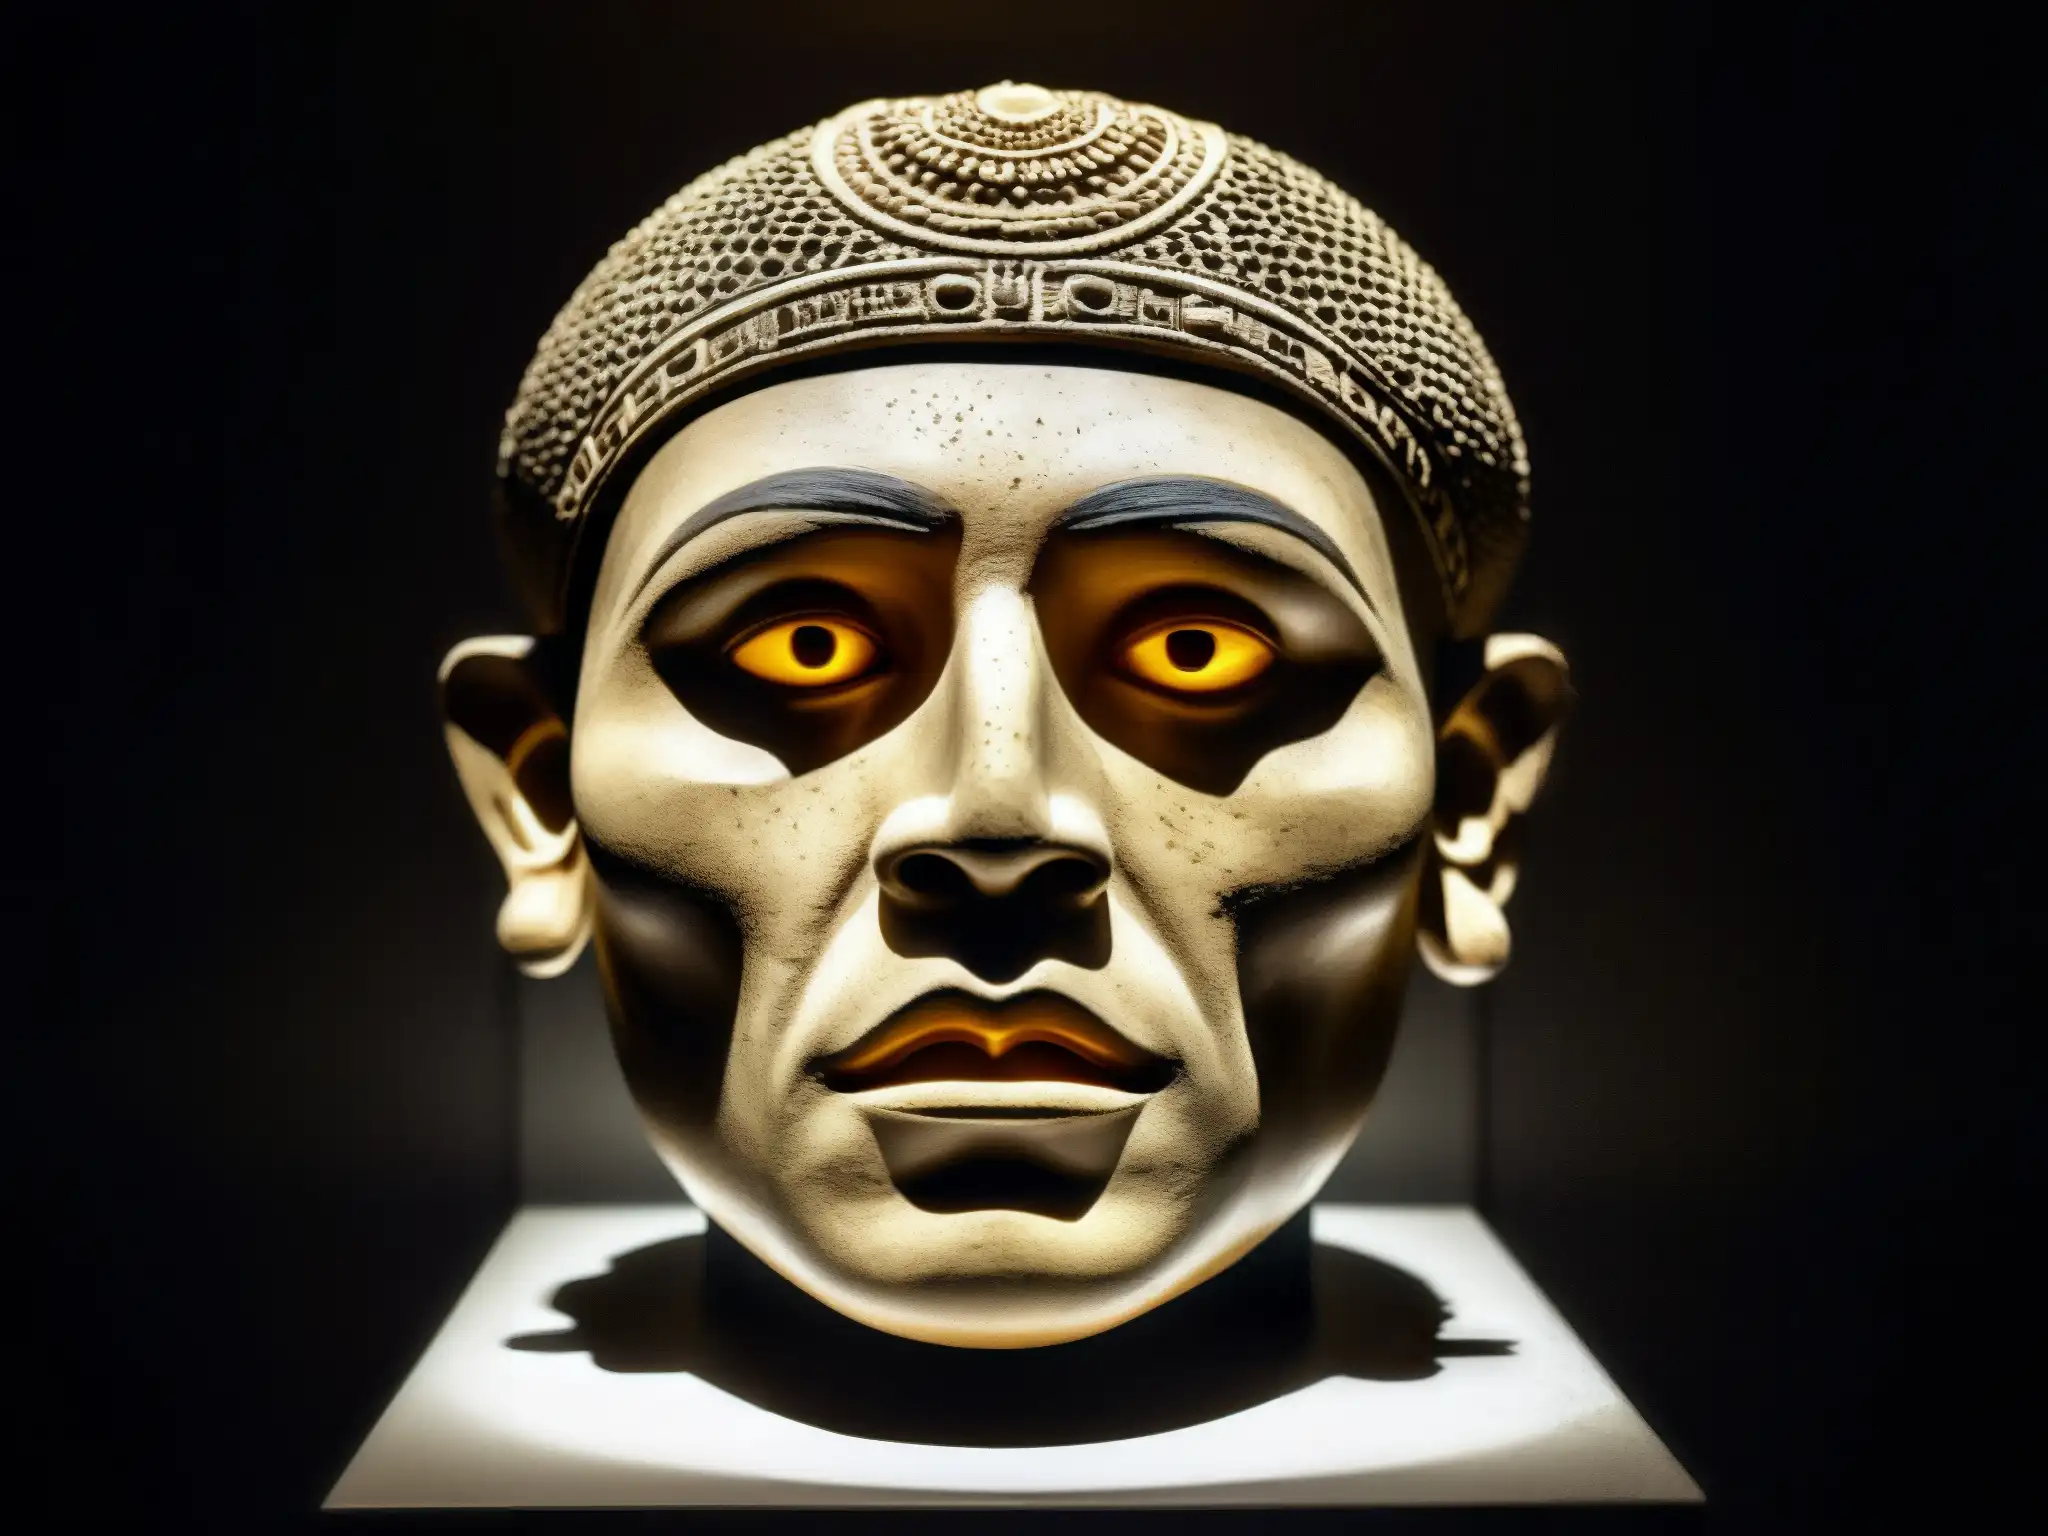 Escultura detallada de la antigua 'Cabeza Parlante' en museo de Ottawa, con aura enigmática y origen maldición